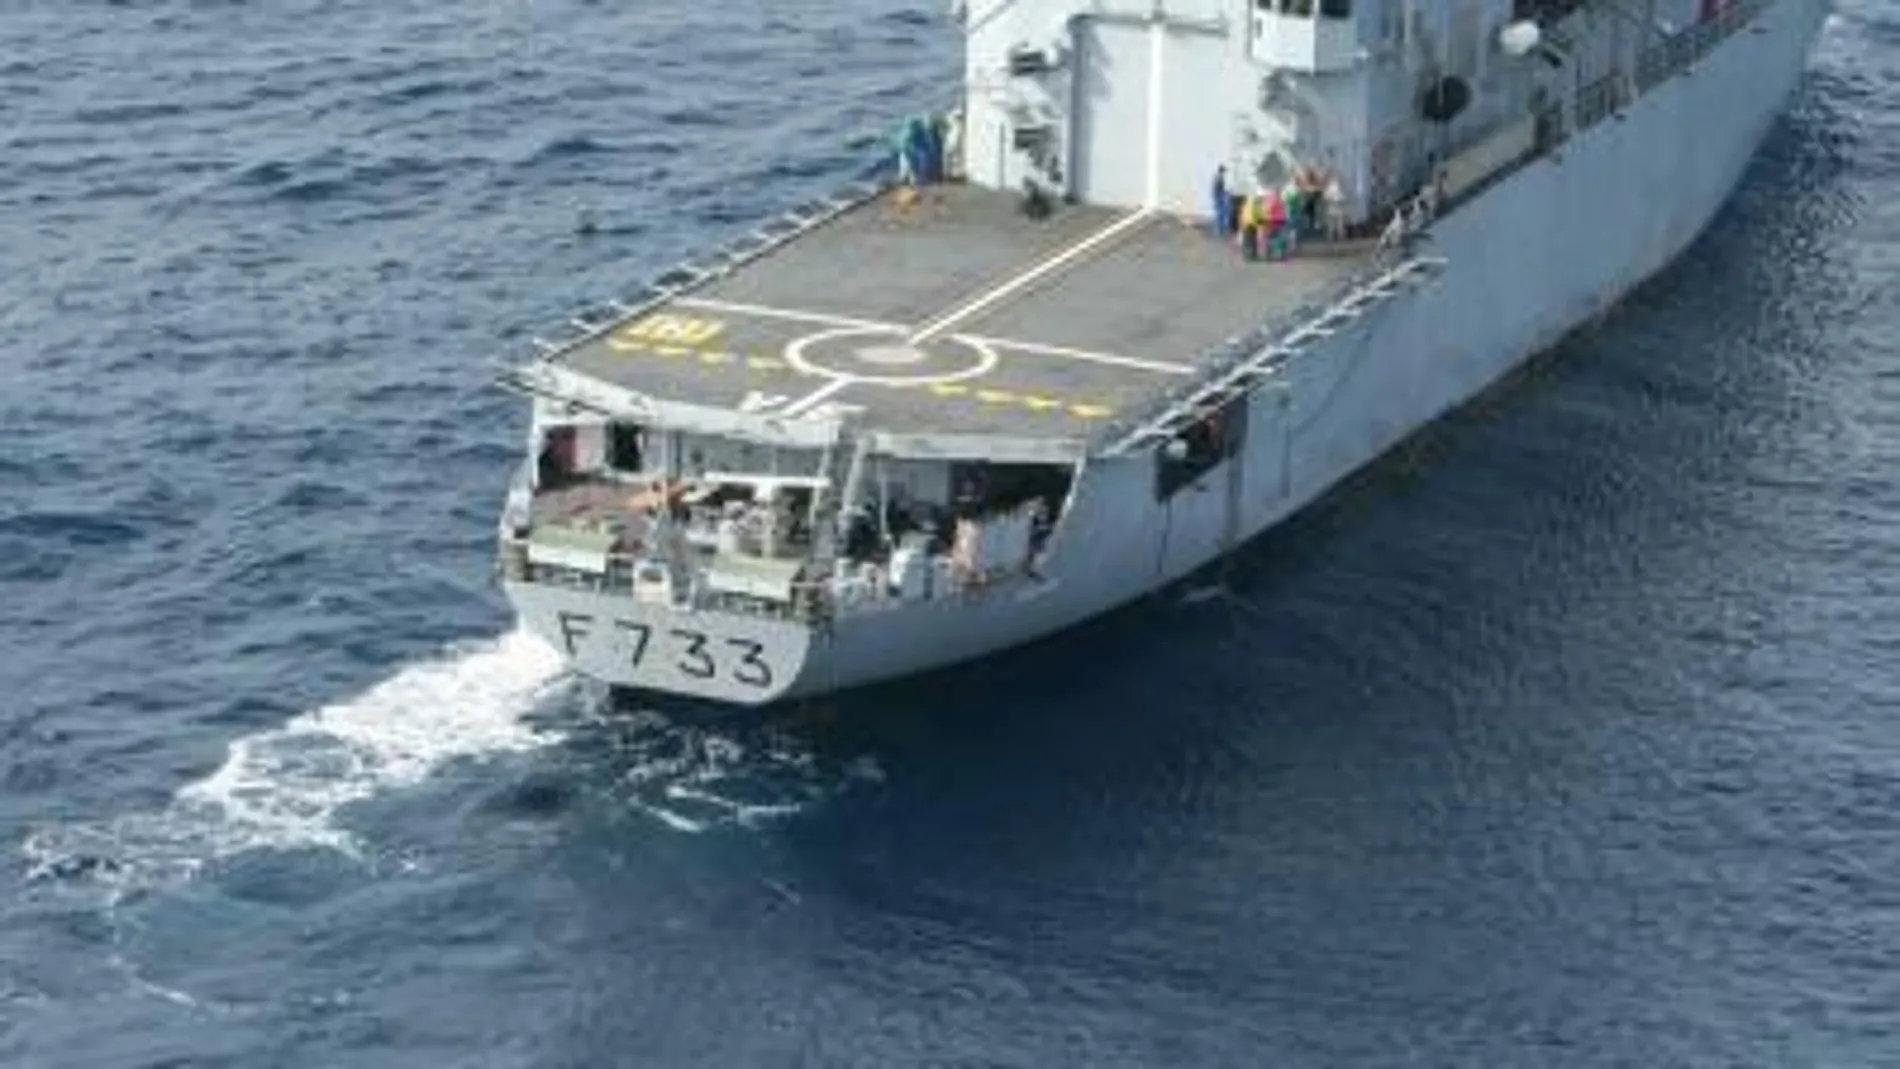 Francia se retira de la operación conjunta tras el incidente contra su fragata